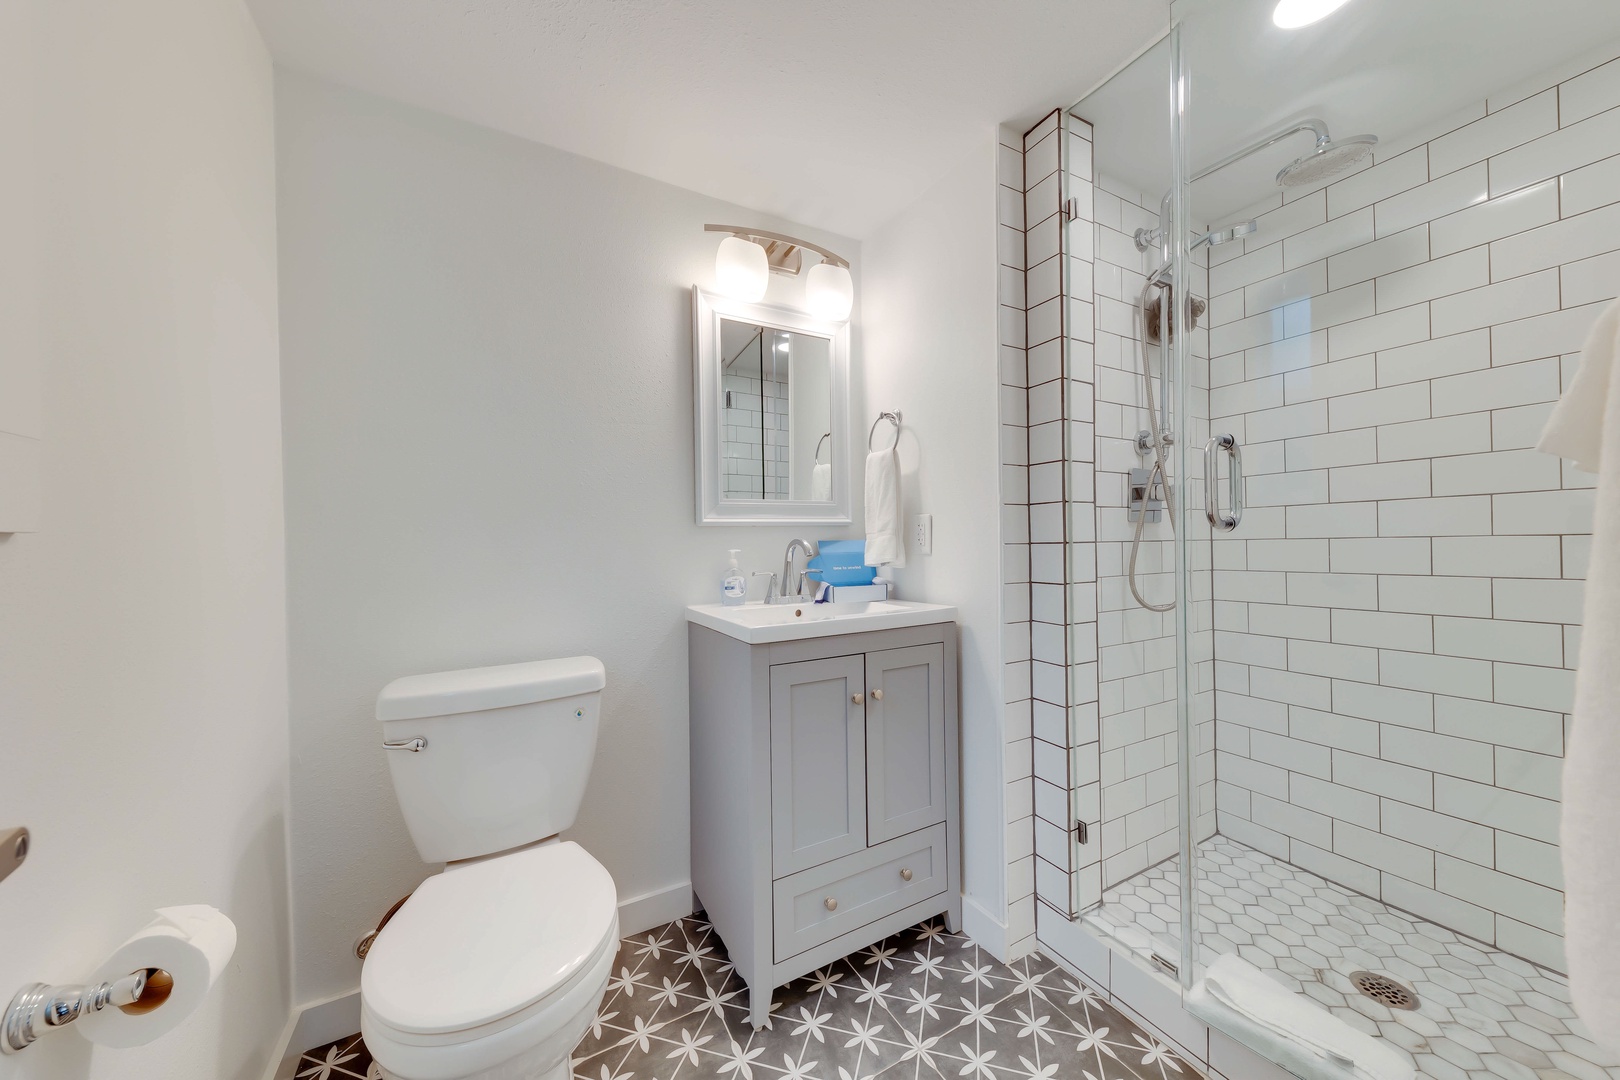 The cozy queen bedroom en suite offers privacy & sleek glass shower